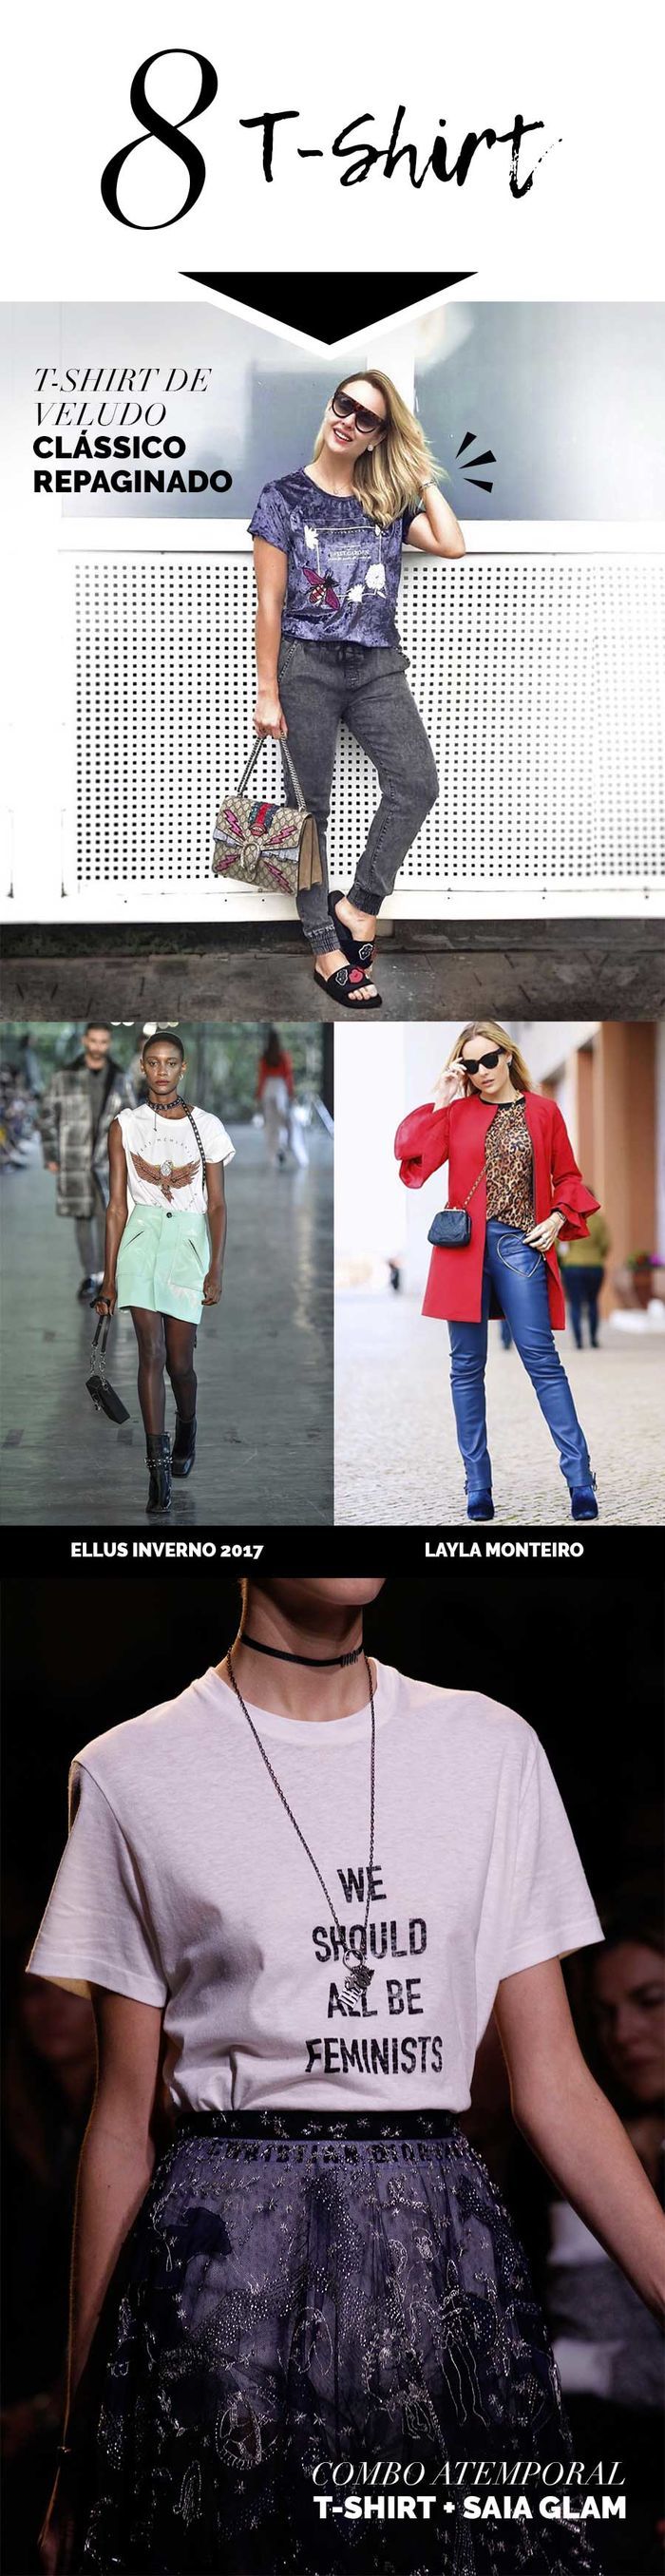 Layla Monteiro Peças Que Não Saem De Moda Camiseta Branca jaqueta jeans moletom t-shirt